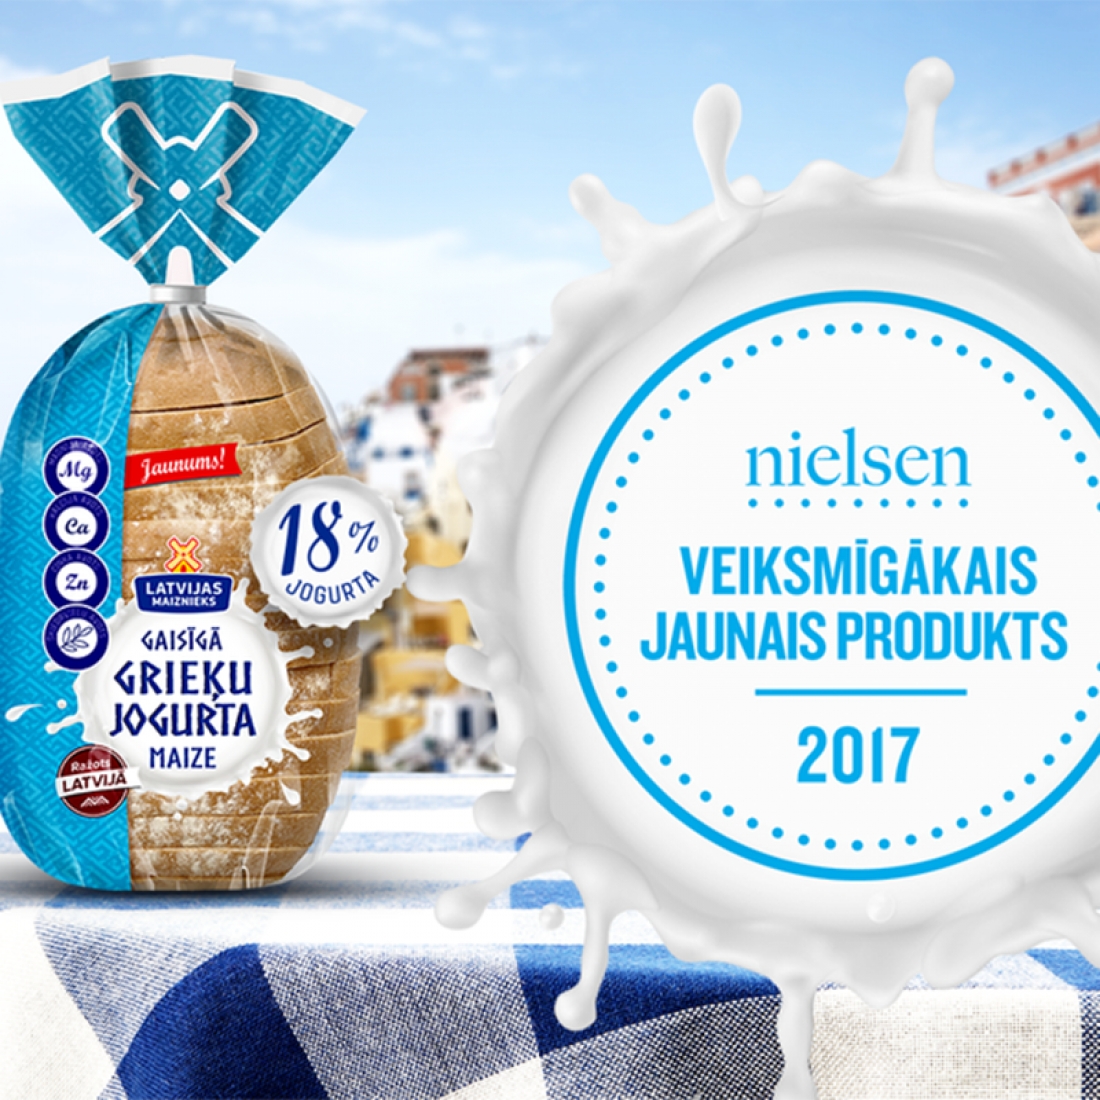 “Grieķu jogurta maize” saņem Latvijas gada veiksmīgākā produkta apbalvojumu